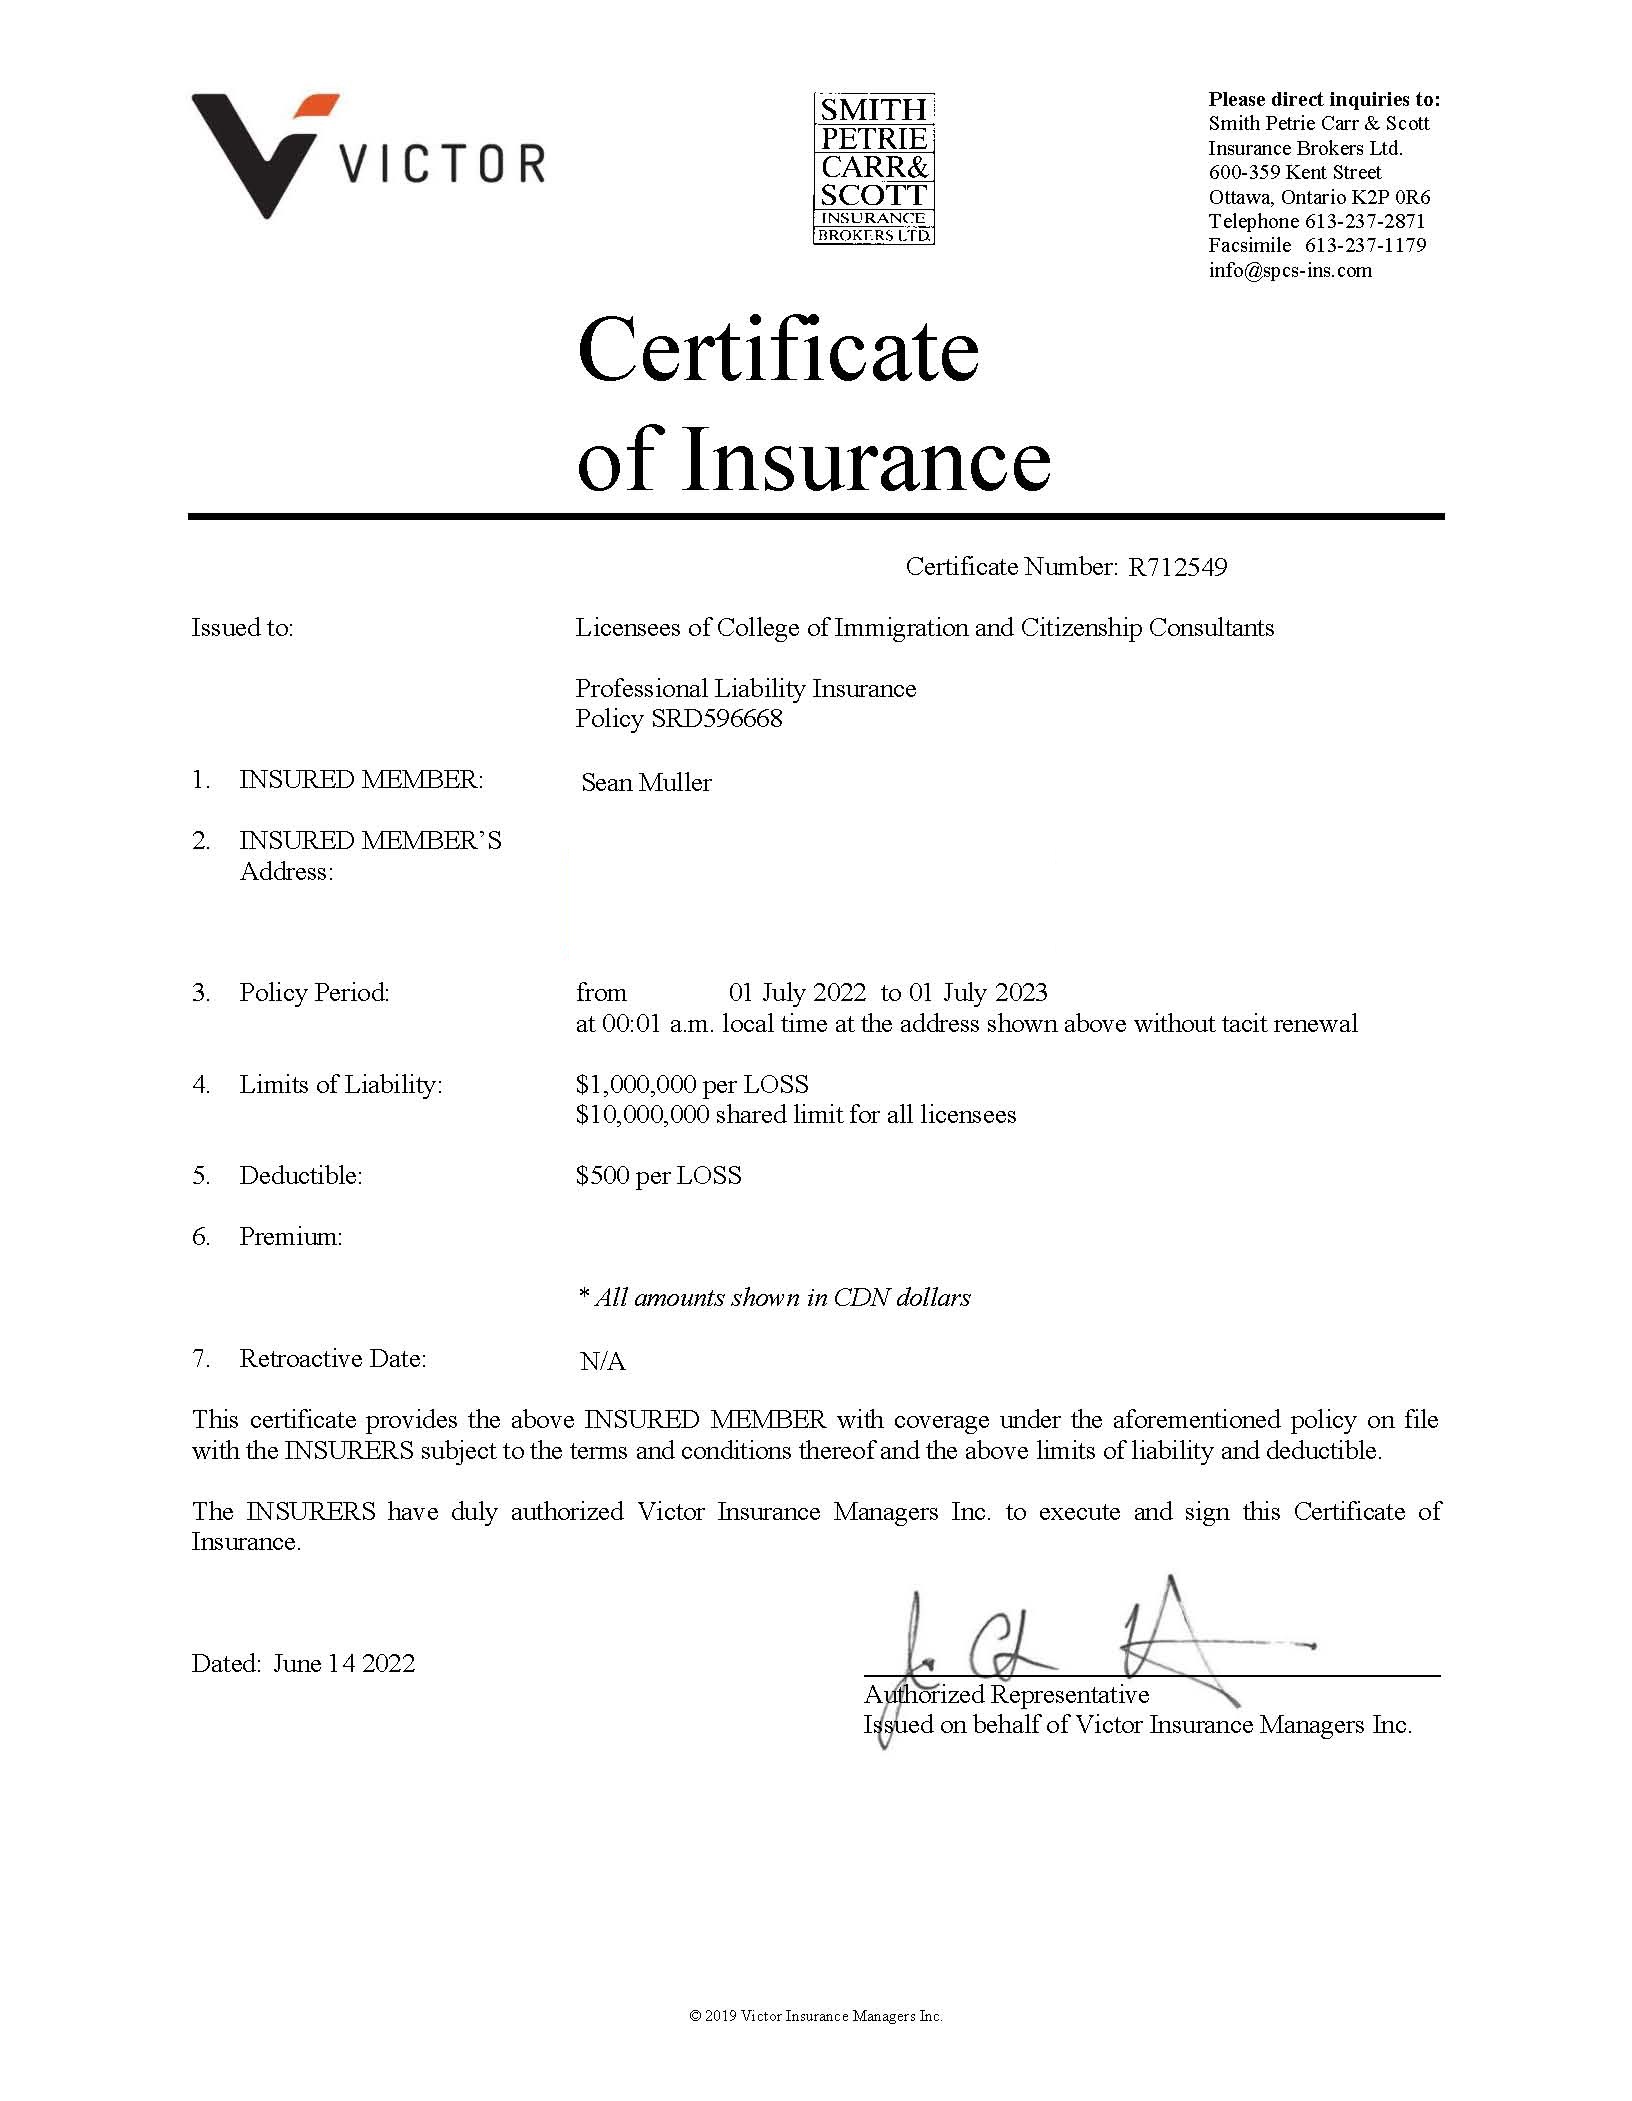 [Certificiate of Insurance in Canada]